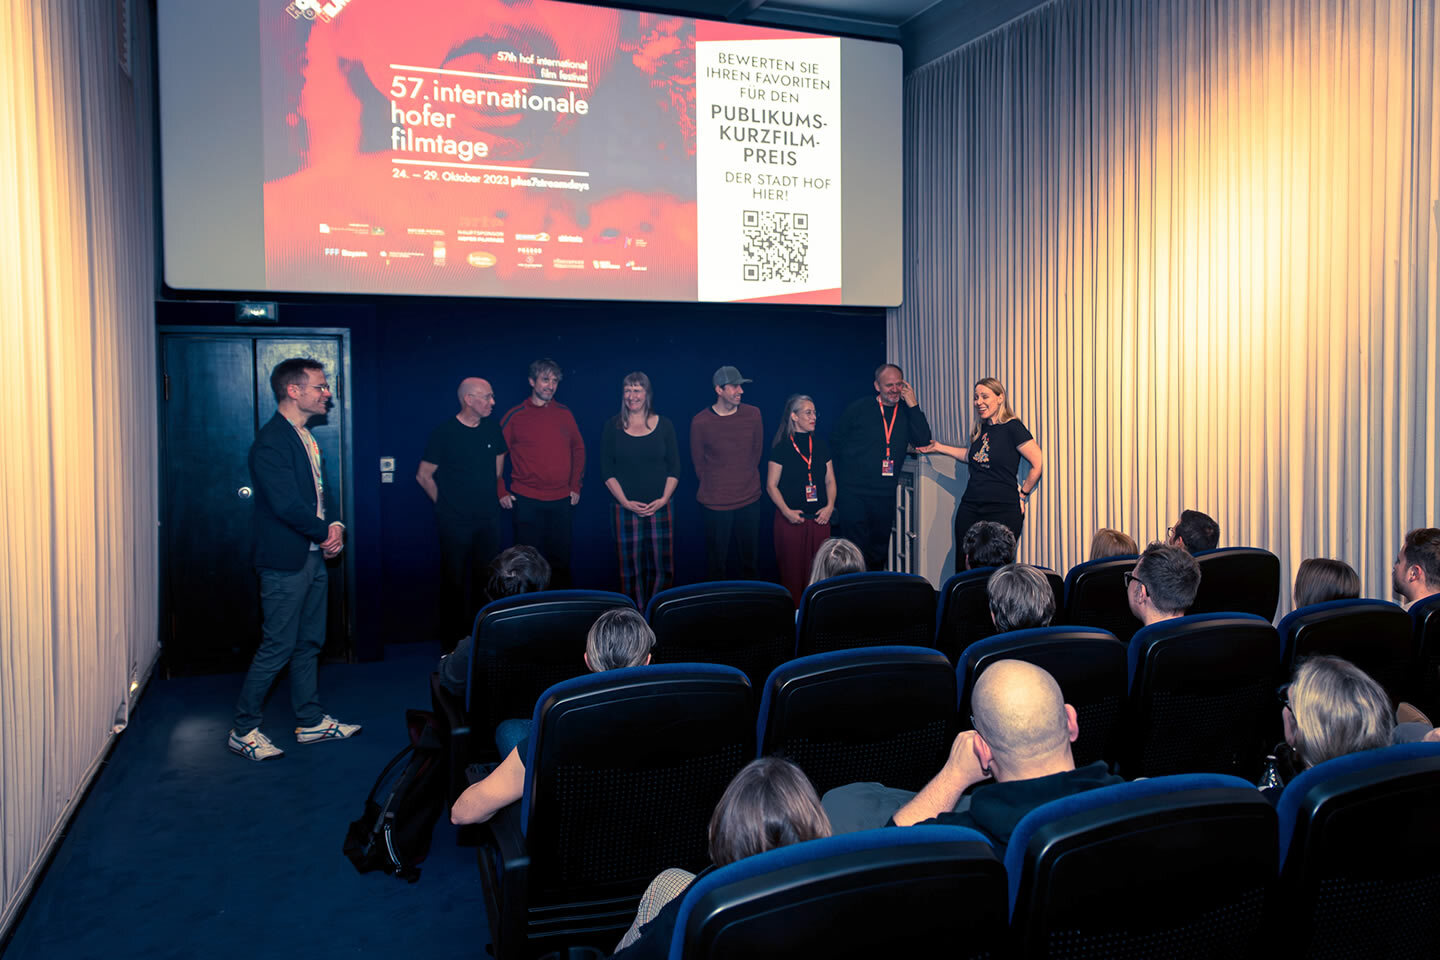 Das Team von HINTER GUTEN TÜREN bei den 57. Internationalen Hofer Filmtagen 2023